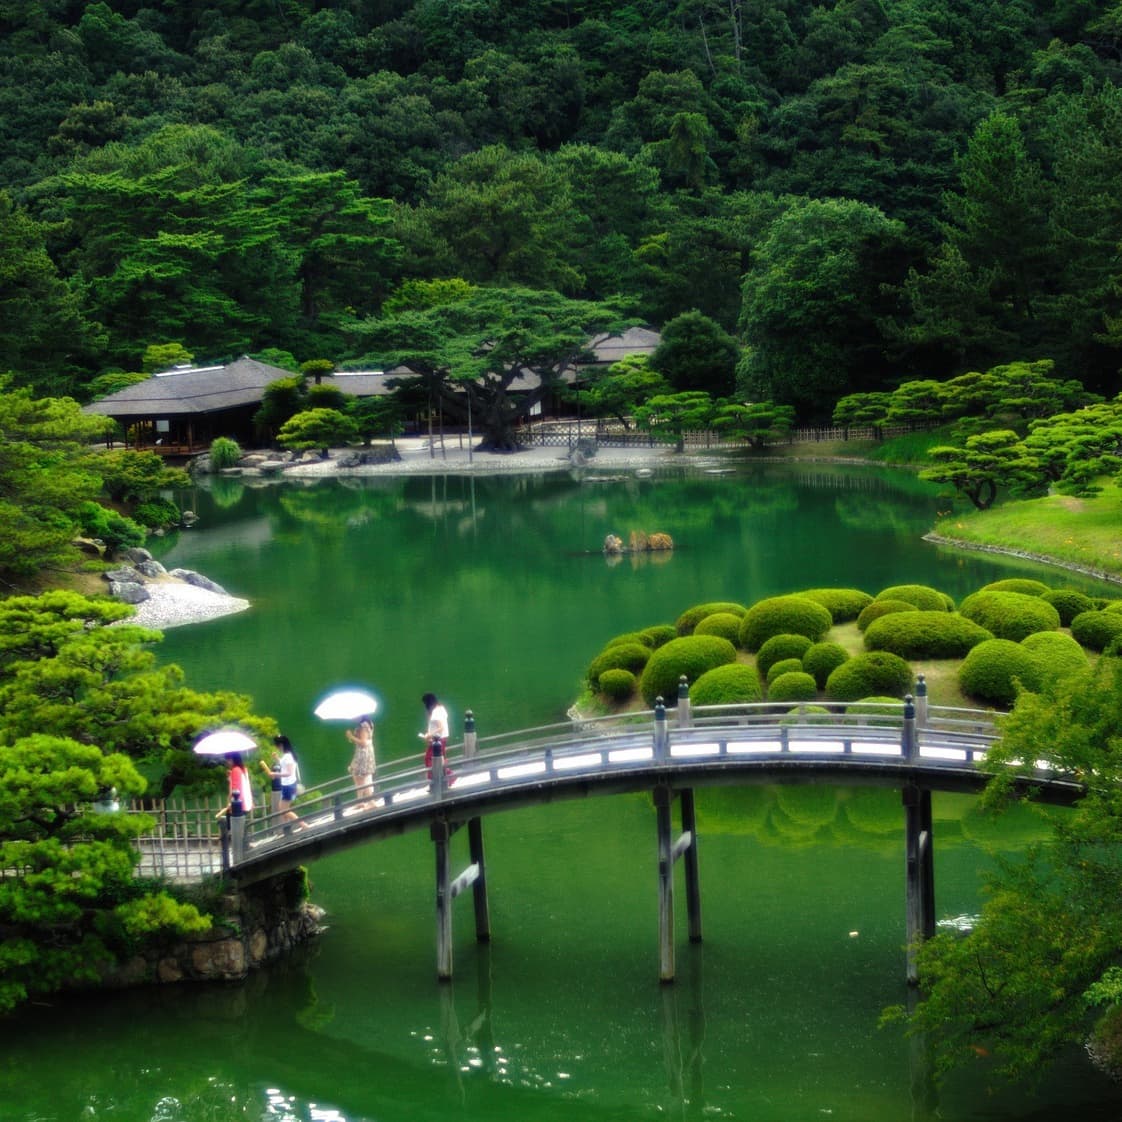 大垣の旅行会社大幸ツアーの日本庭園旅行